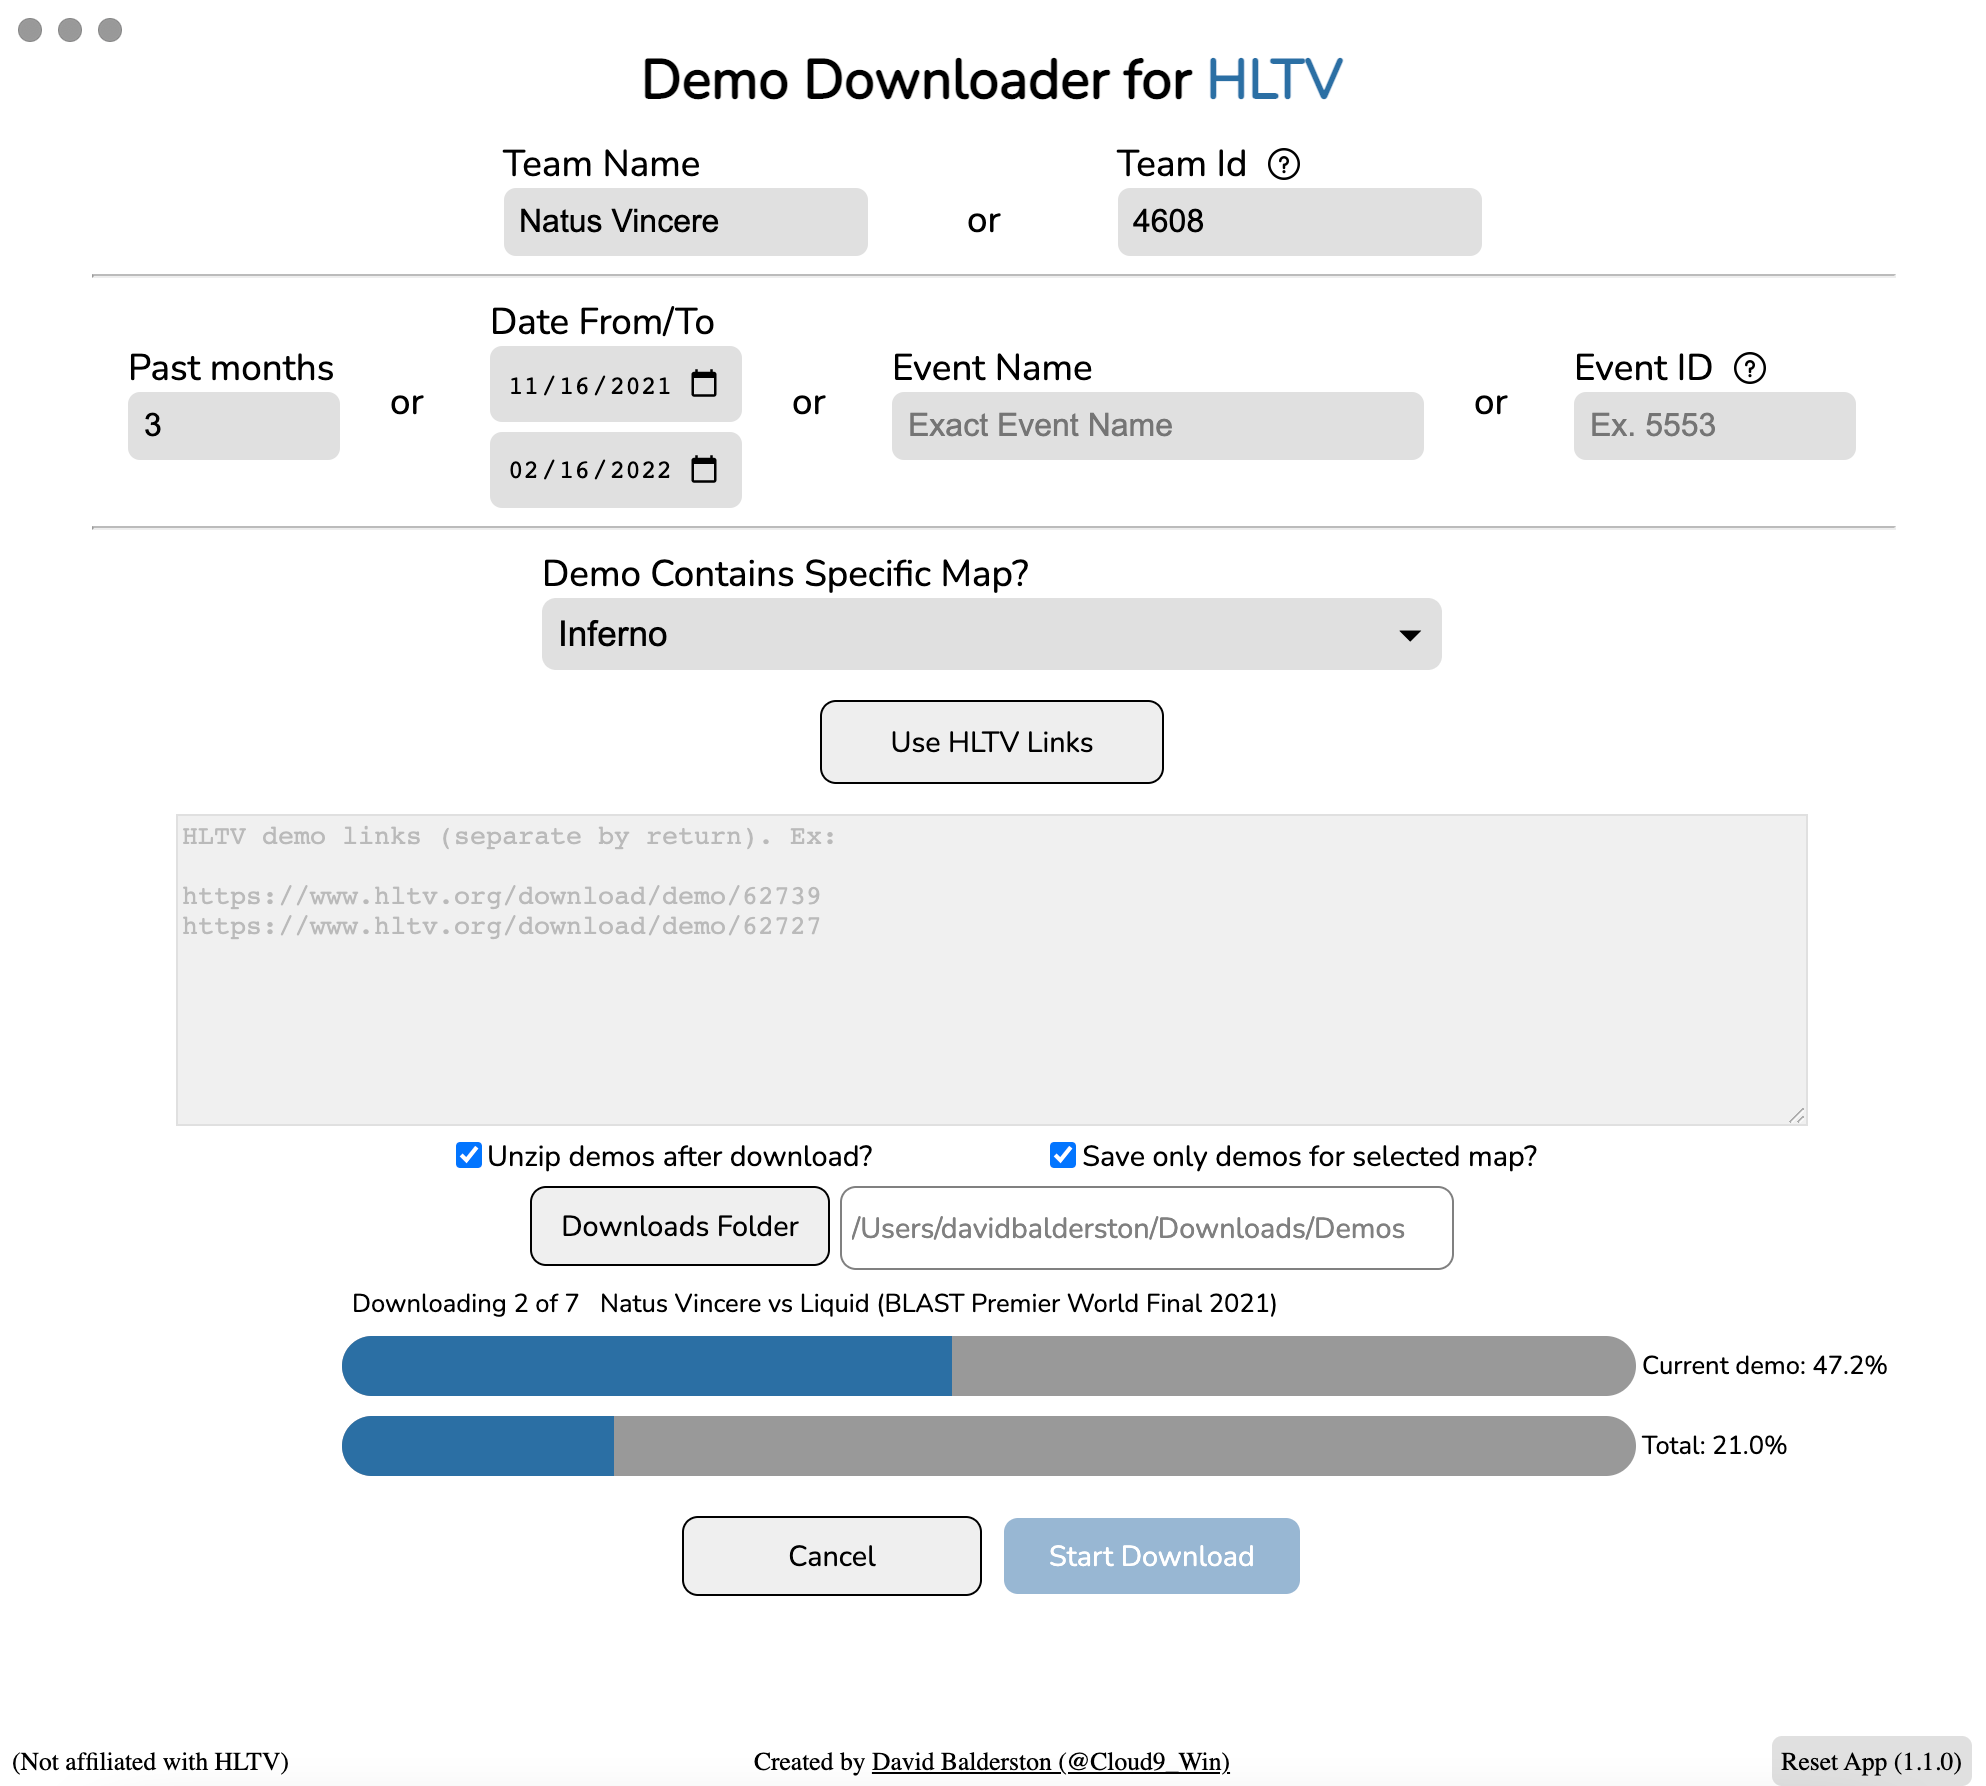 Demo Downloader for HLTV